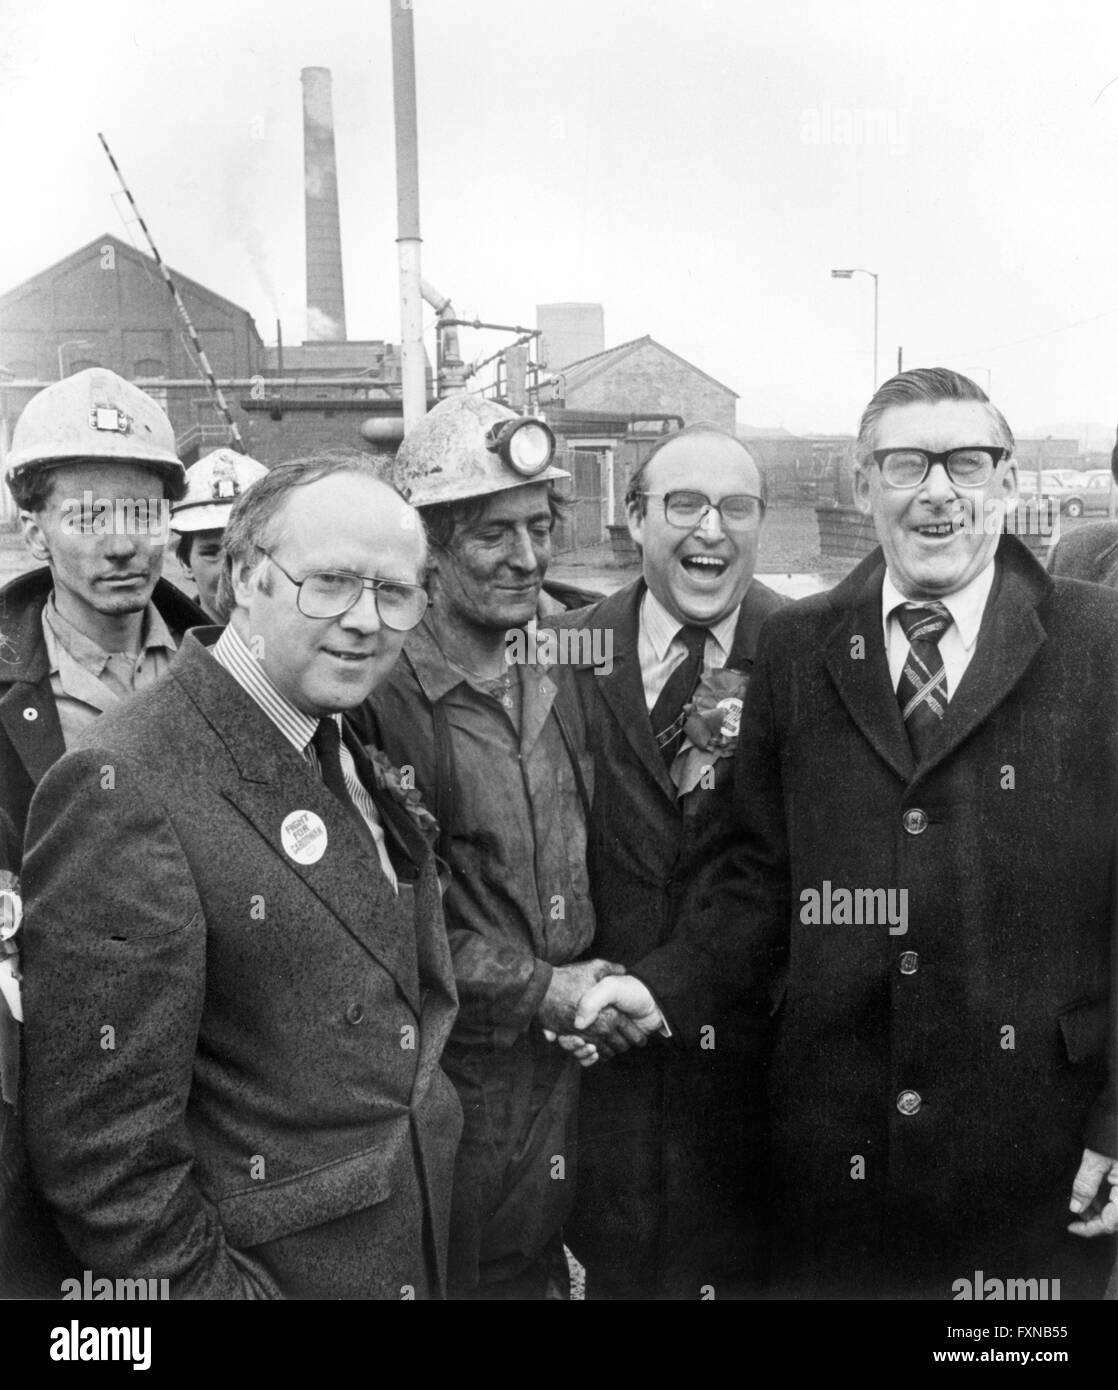 John Smith, député travailliste écossais mp avec leader mick mcgahey mineurs à la mine pendant la Bilston Glen de grève des mineurs de 1984 Banque D'Images